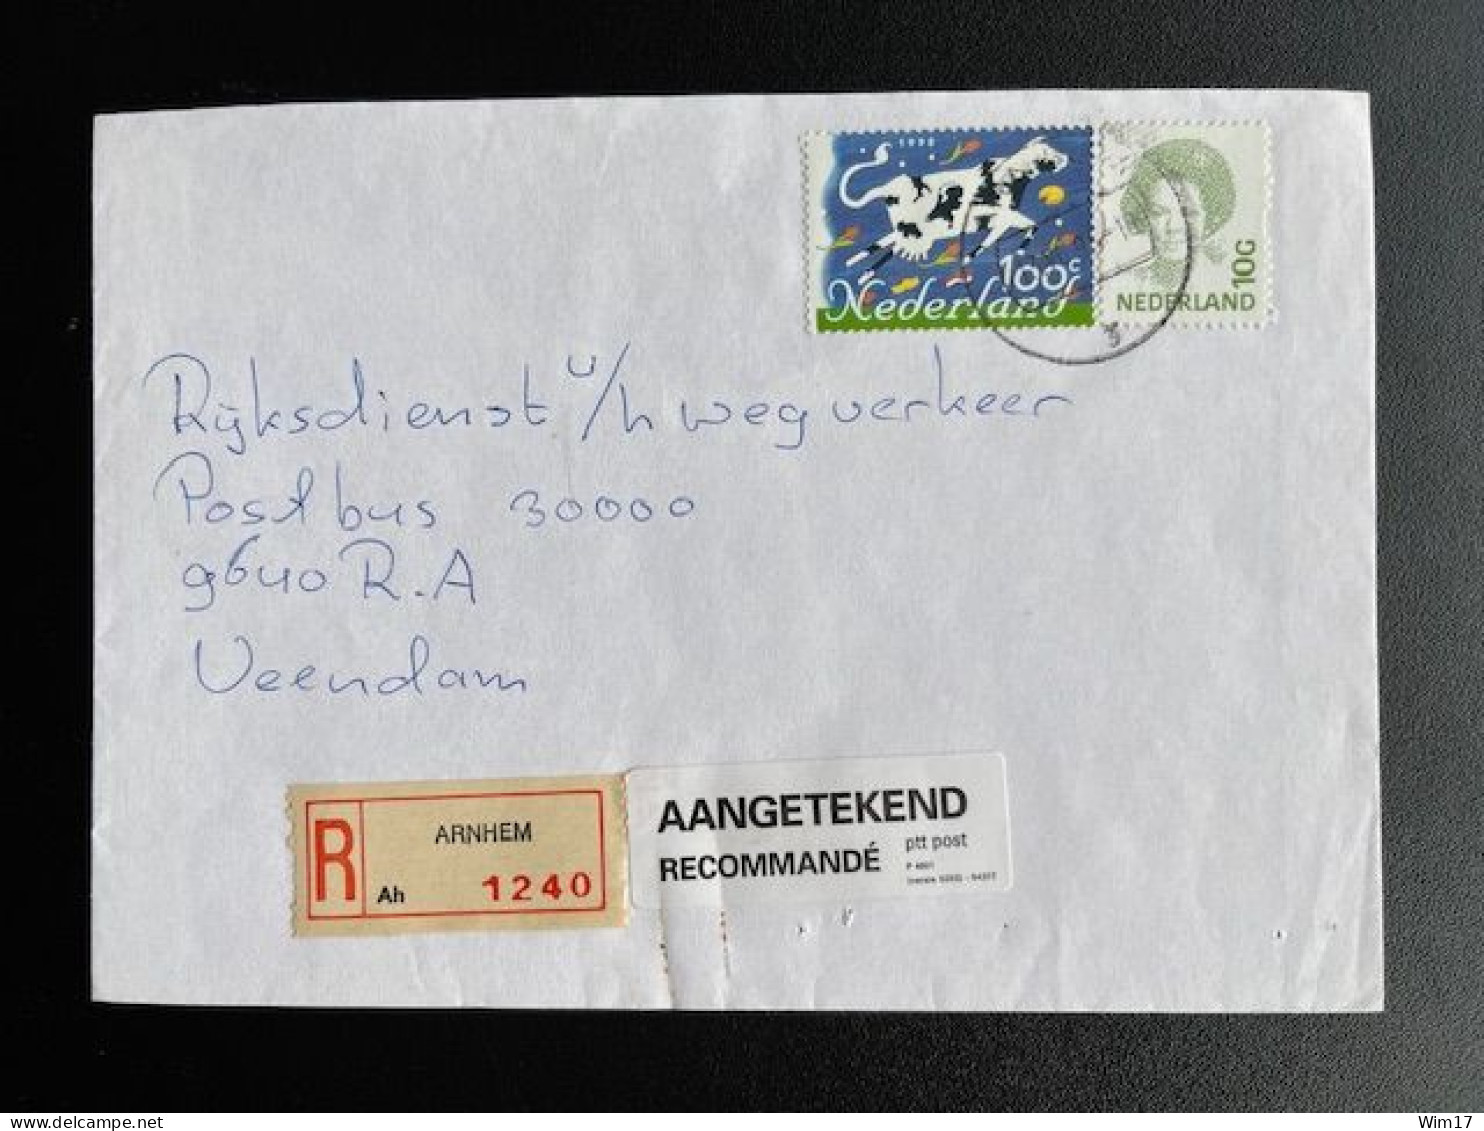 NETHERLANDS 1995 REGISTERED LETTER ARNHEM TO VEENDAM 13-06-1995 NEDERLAND AANGETEKEND - Covers & Documents